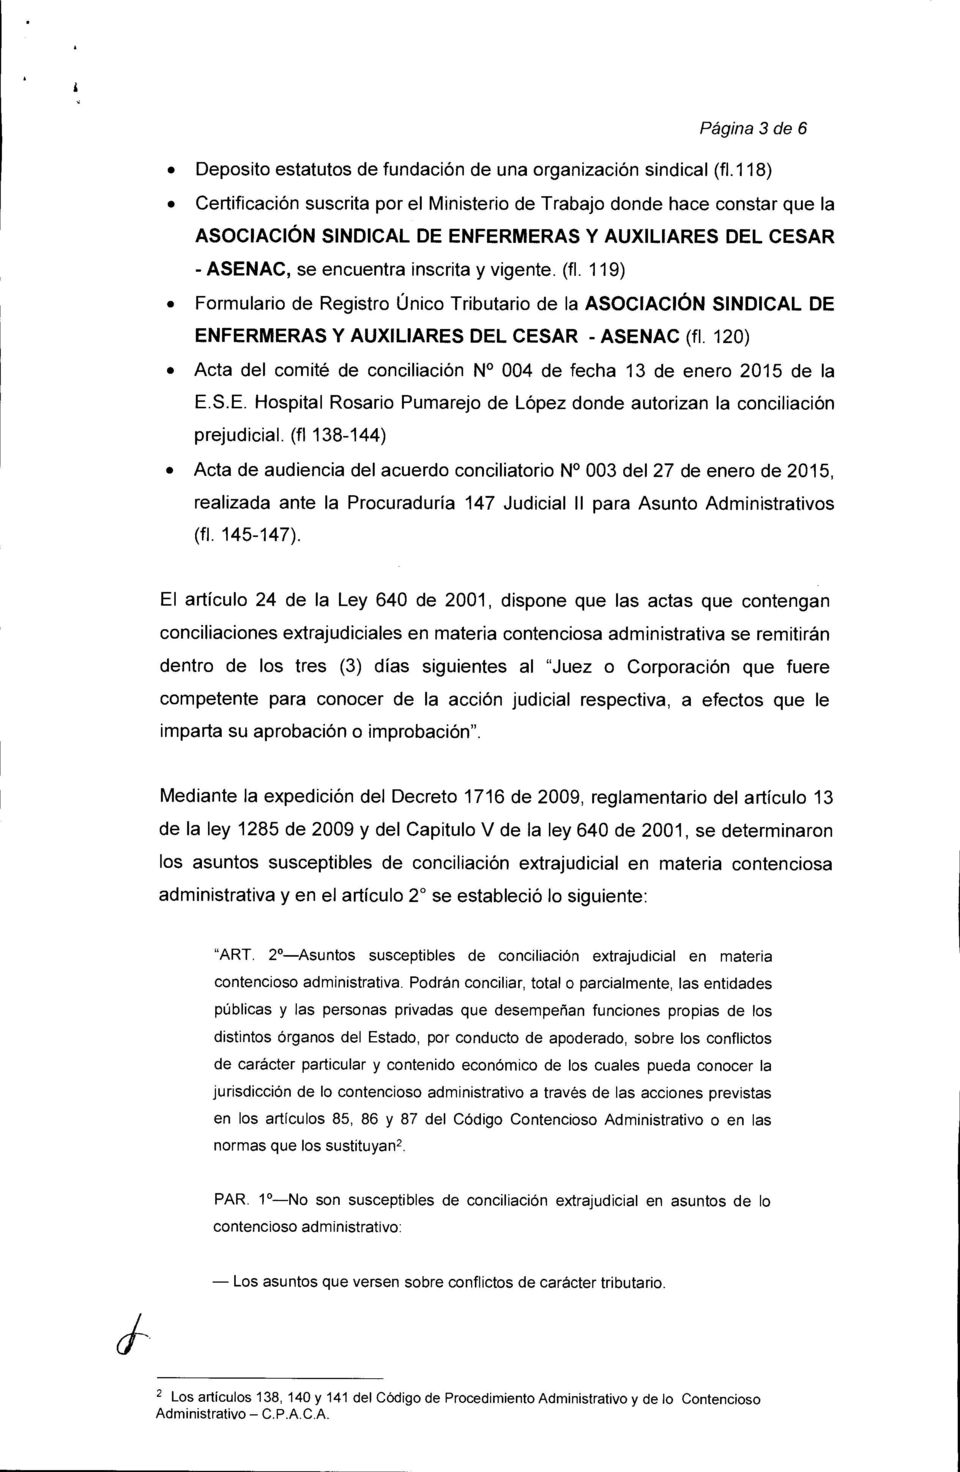 120) Acta del comité de conciliación N 004 de fecha 13 de enero 2015 de la E.S.E. Hospital Rosario Pumarejo de López donde autorizan la conciliación prejudicial.